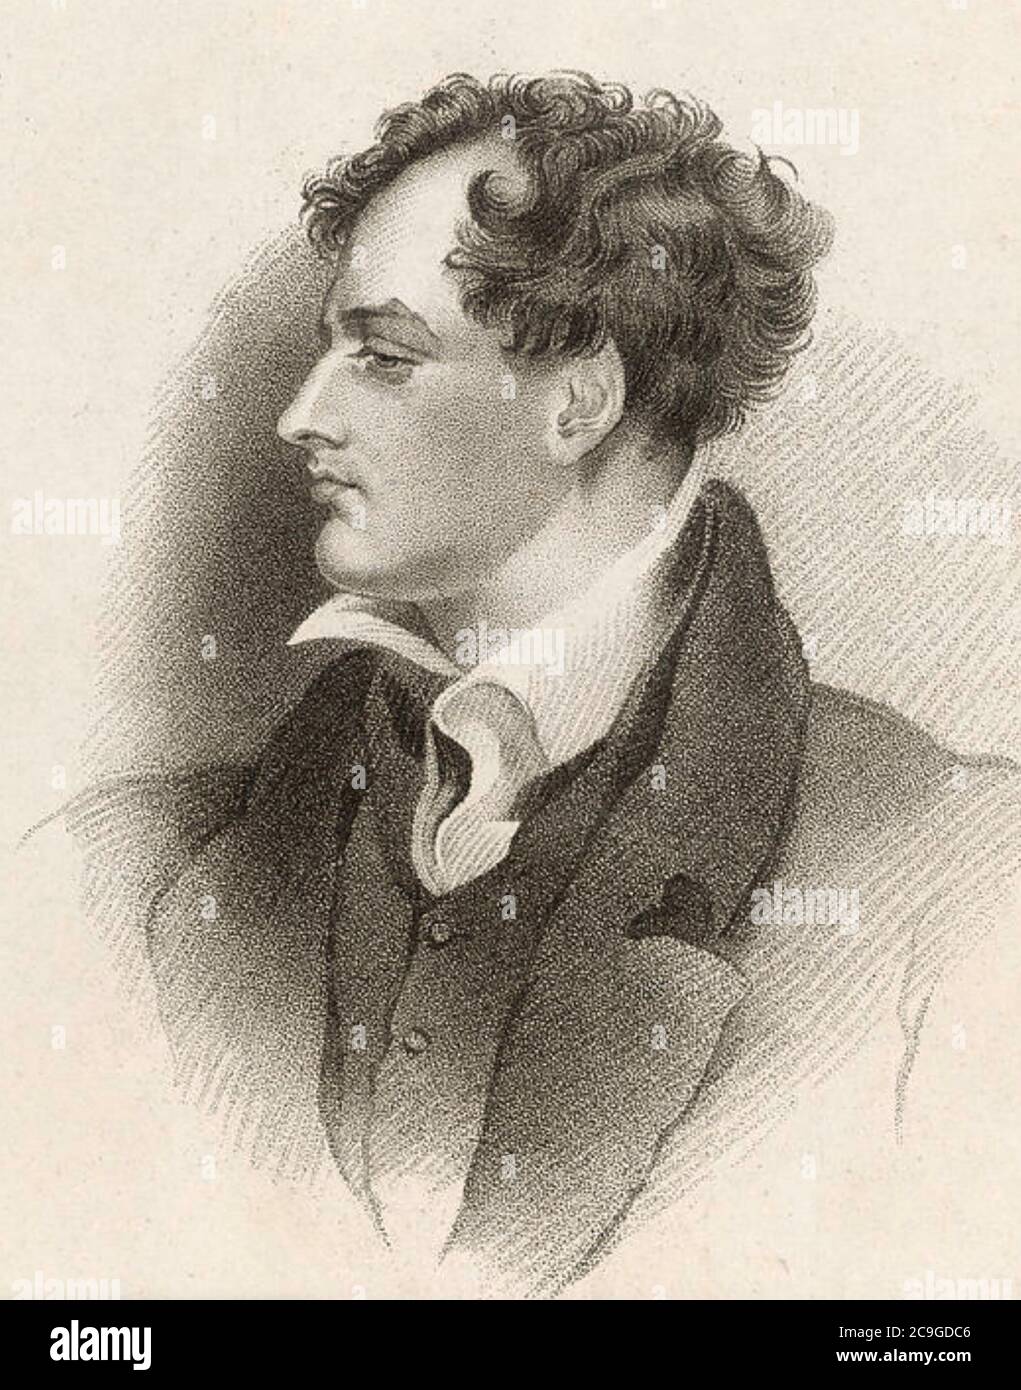 GEORGE GORDON BYRON,Lord Byron (1788-1824) englischer Dichter und Politiker, um 1813. Stockfoto